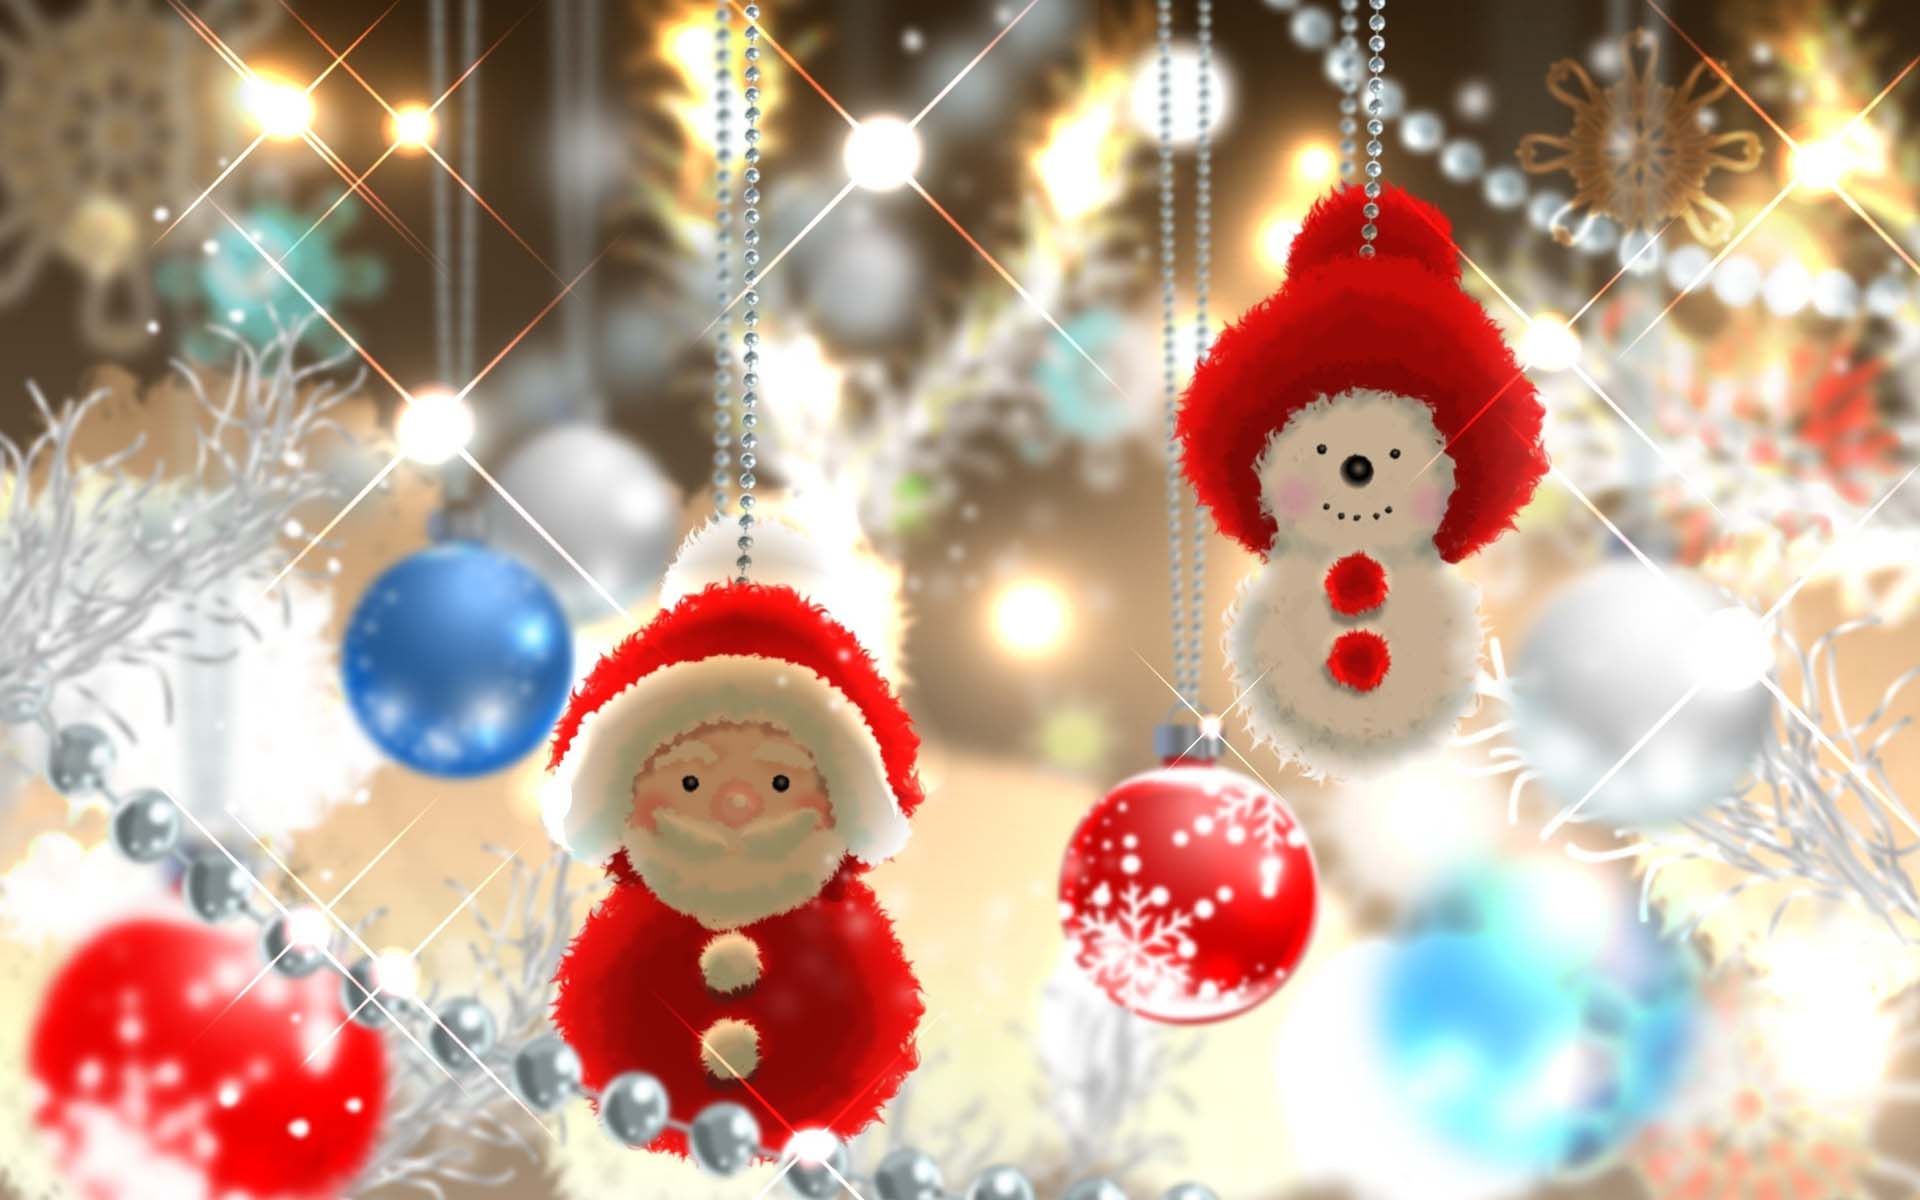 Hình nền Người Tuyết Với Giáng Sinh Vui Vẻ Nền 2021 Khái Niệm Giáng Sinh  Màu đỏ Xmas Background Vector để tải xuống miễn phí  Pngtree